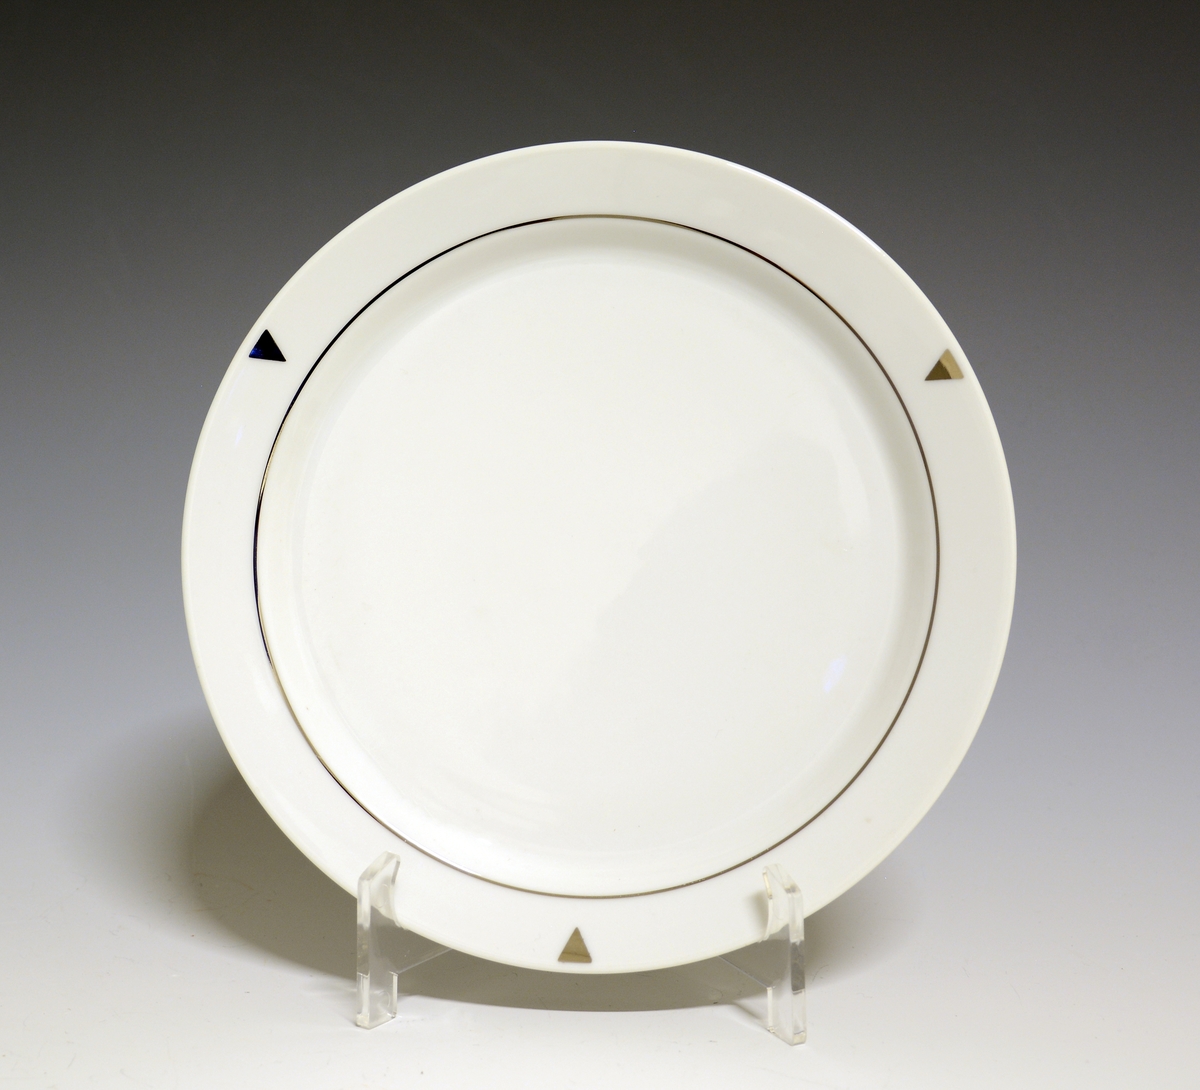 Asjett av porselen. Hvit glasur, med platinastrek innerst på fanen. Tre trekanter i platina peker mot speilen.

Modell: Style, formgitt av Poul Jensen.